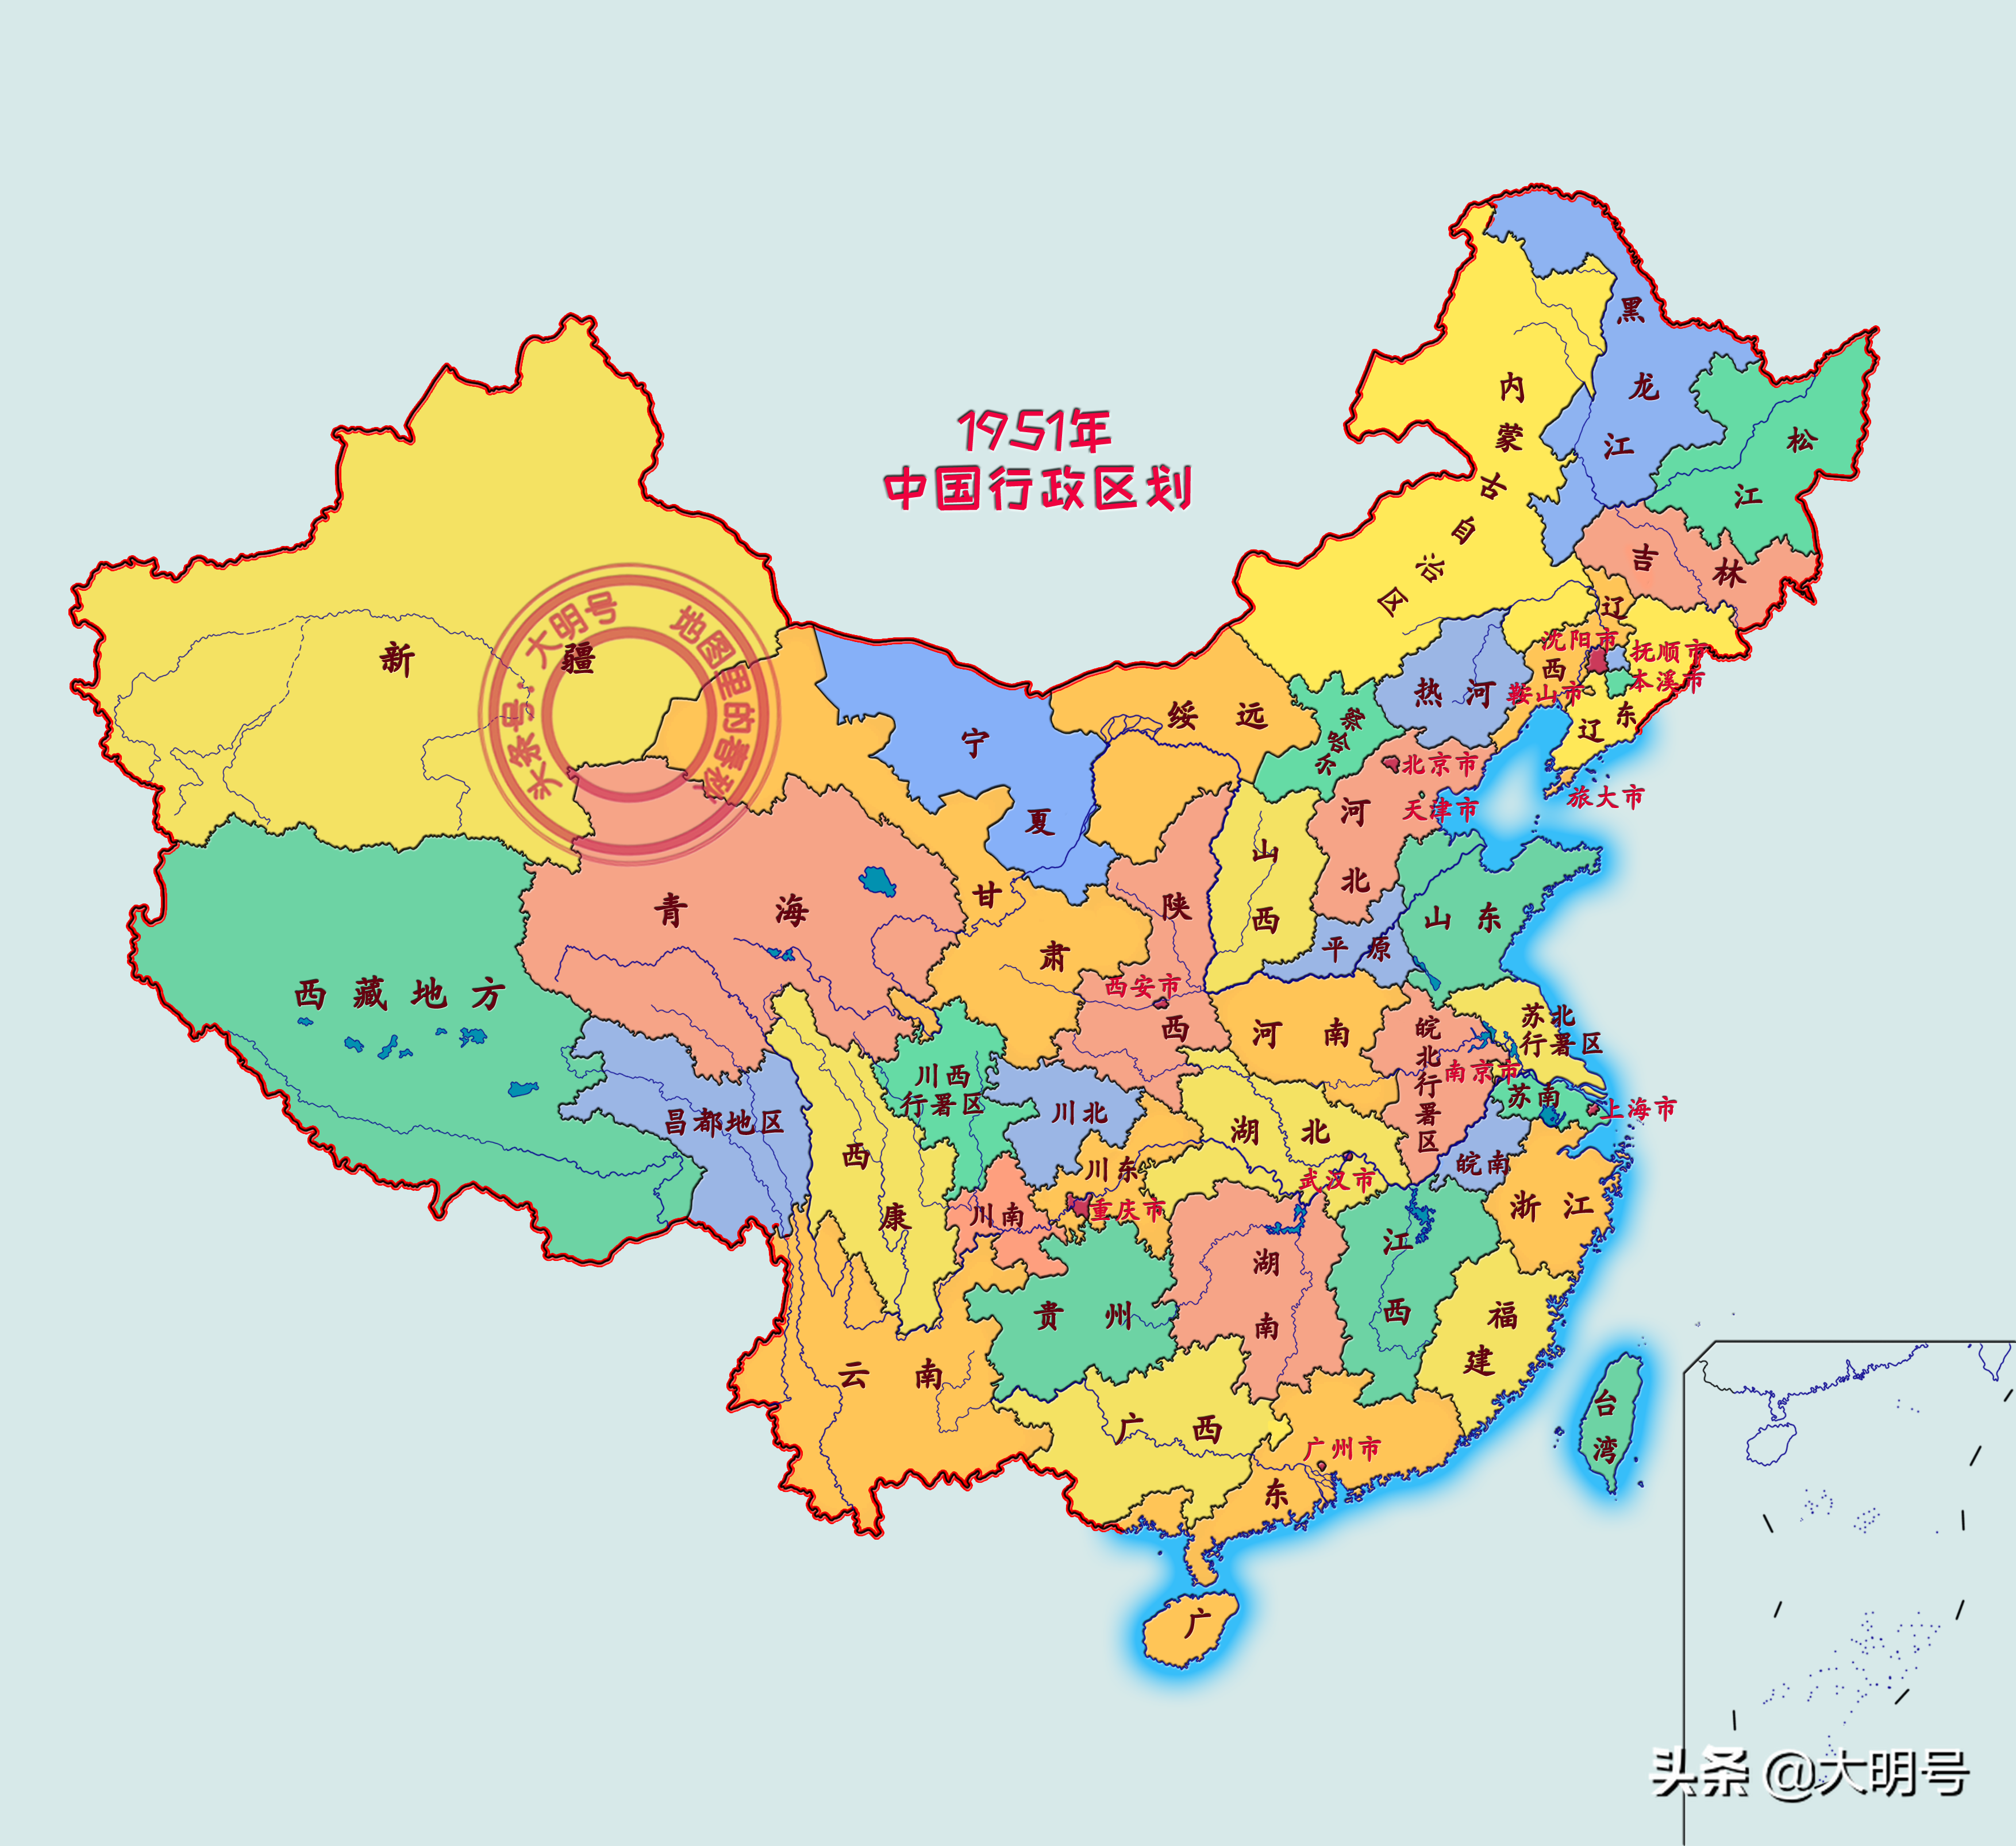 中国一共有多少个省，直辖市和自治区详解？